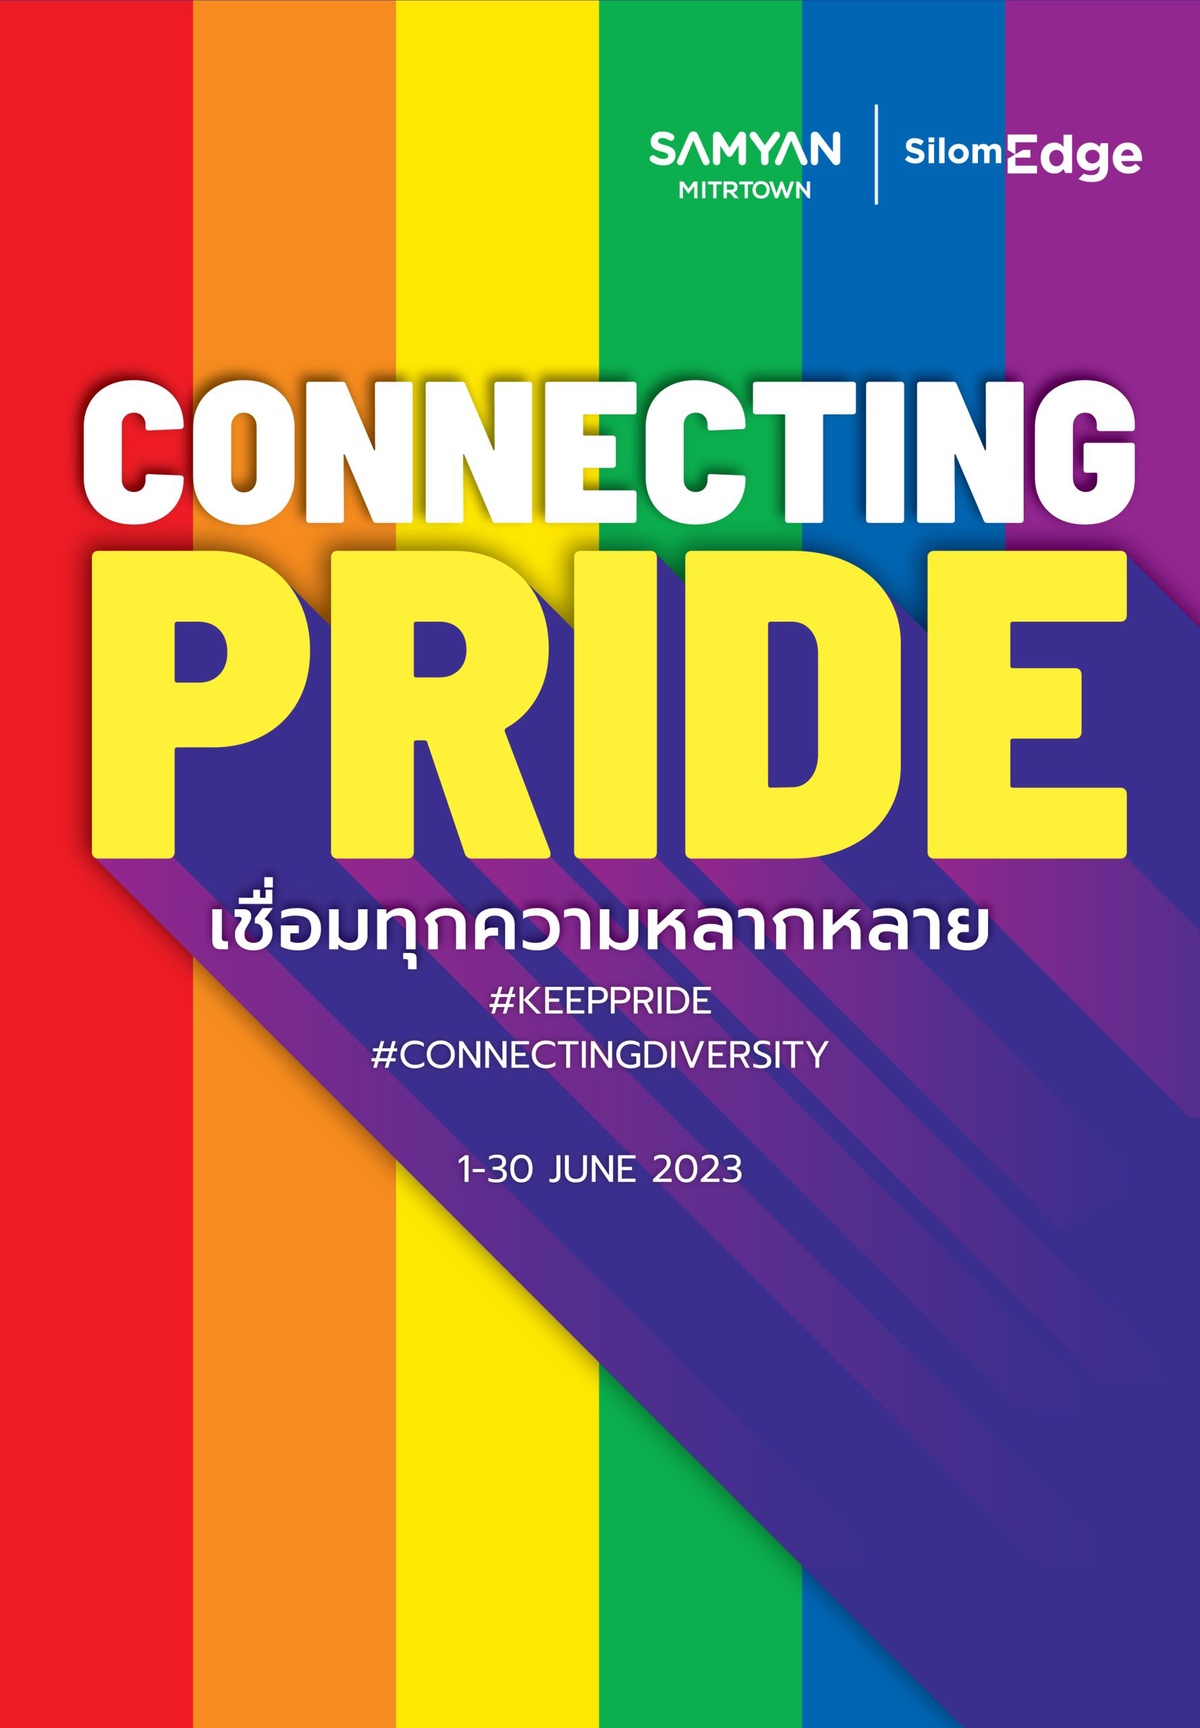 เฟรเซอร์ส พร็อพเพอร์ตี้ คอมเมอร์เชียล (ประเทศไทย) ศูนย์การค้าสามย่านมิตรทาวน์ และ ศูนย์การค้าสีลมเอจ ประกาศเชื่อมต่อสองแยกบนถนนพระราม 4 ให้เป็น Connecting Pride เชื่อมทุกความหลากหลาย